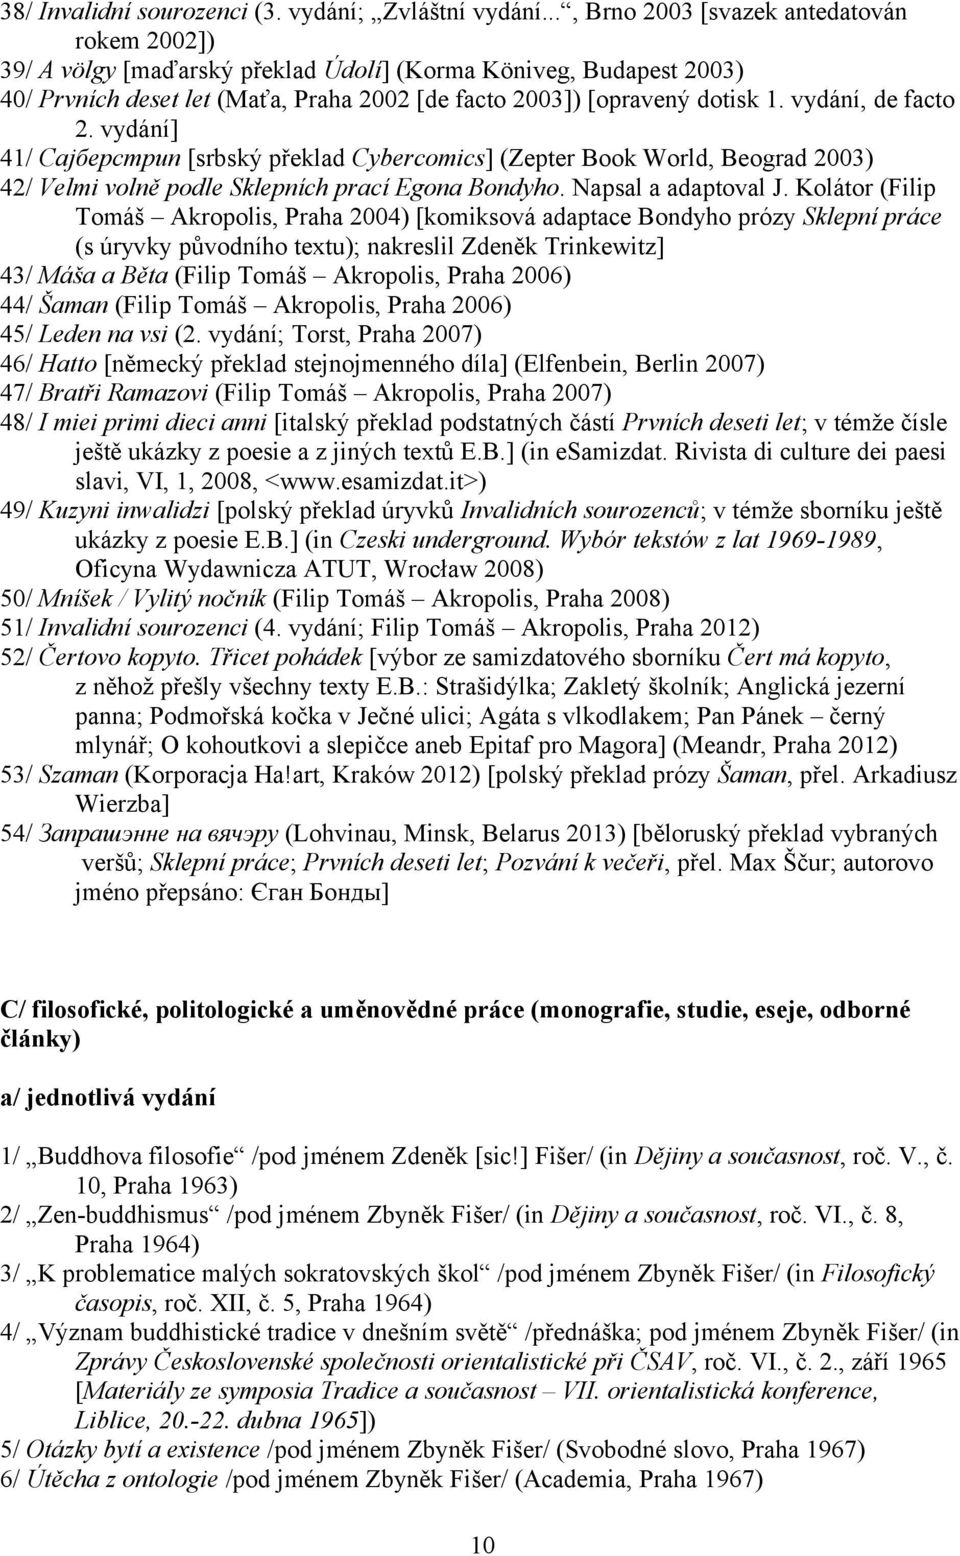 vydání, de facto 2. vydání] 41/ Cajберстрип [srbský překlad Cybercomics] (Zepter Book World, Beograd 2003) 42/ Velmi volně podle Sklepních prací Egona Bondyho. Napsal a adaptoval J.